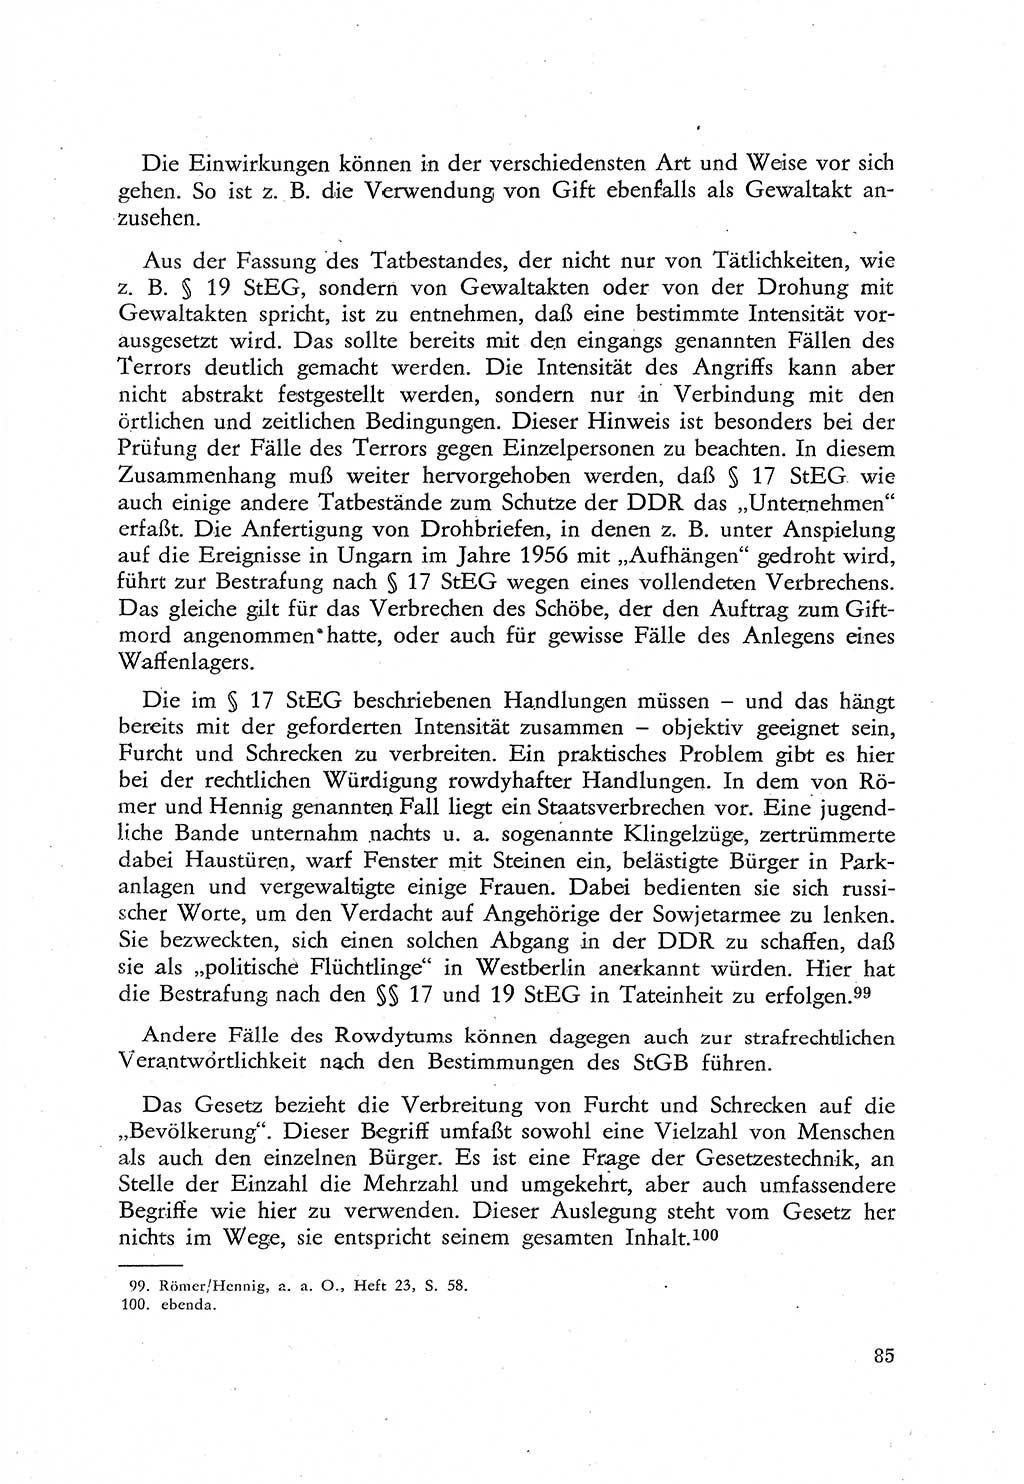 Beiträge zum Strafrecht [Deutsche Demokratische Republik (DDR)], Staatsverbrechen 1959, Seite 85 (Beitr. Strafr. DDR St.-Verbr. 1959, S. 85)